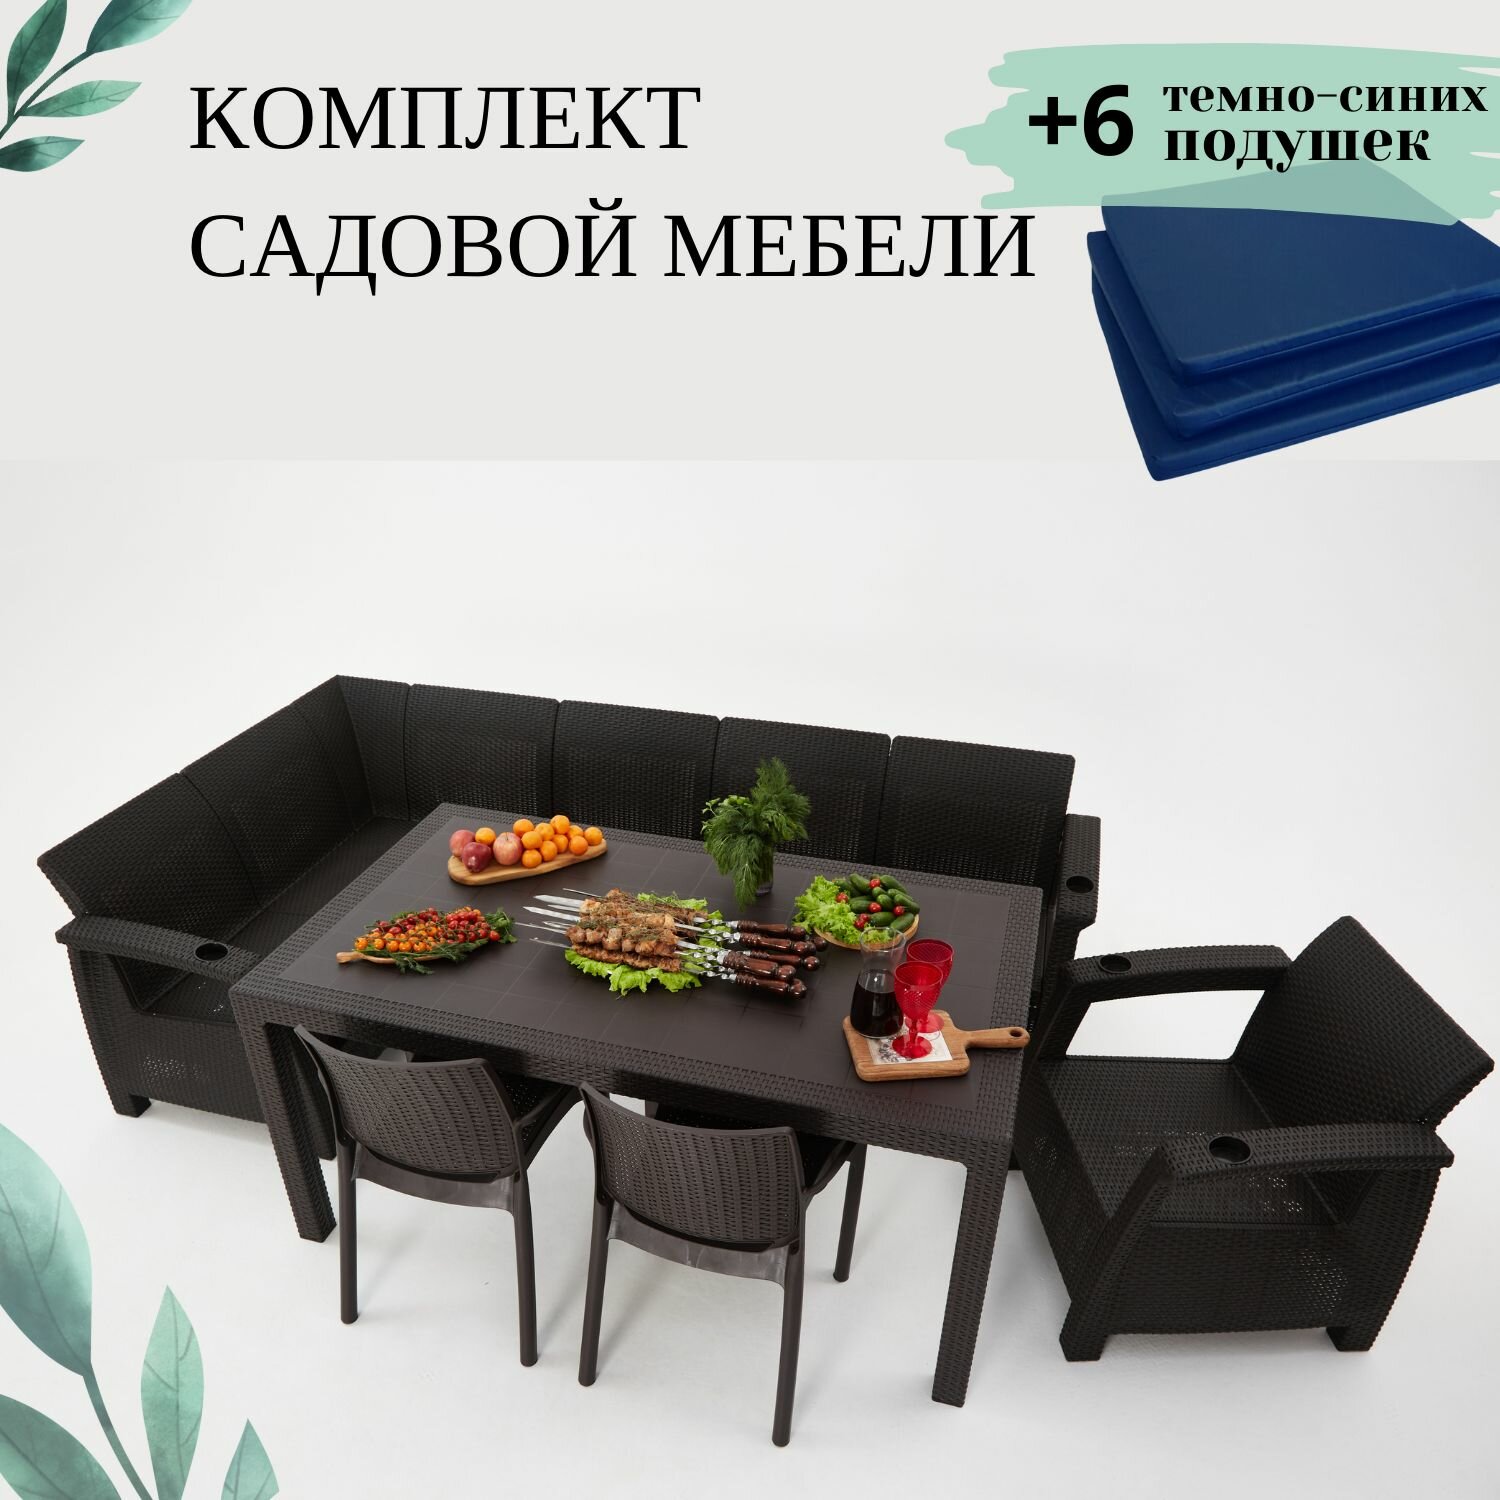 Комплект садовой мебели из ротанга Set 5+1+2стула+обеденный стол 160х95, с комплектом темно-синих подушек